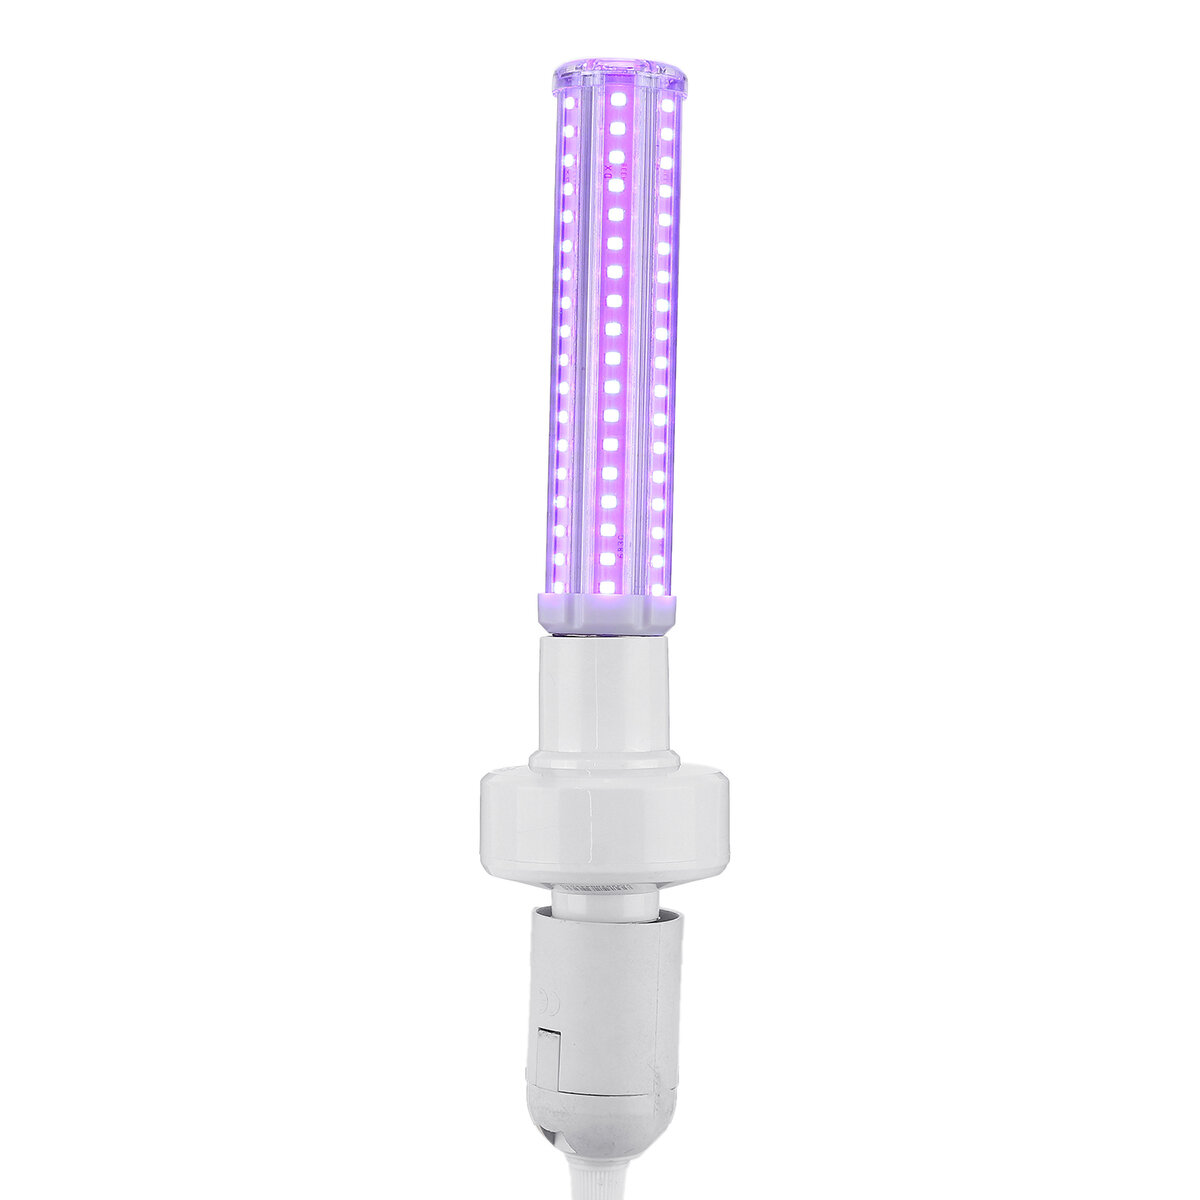 60W UV Lamp Disinfection Light Bulb Sterilizer Remote Control Corn Lamp